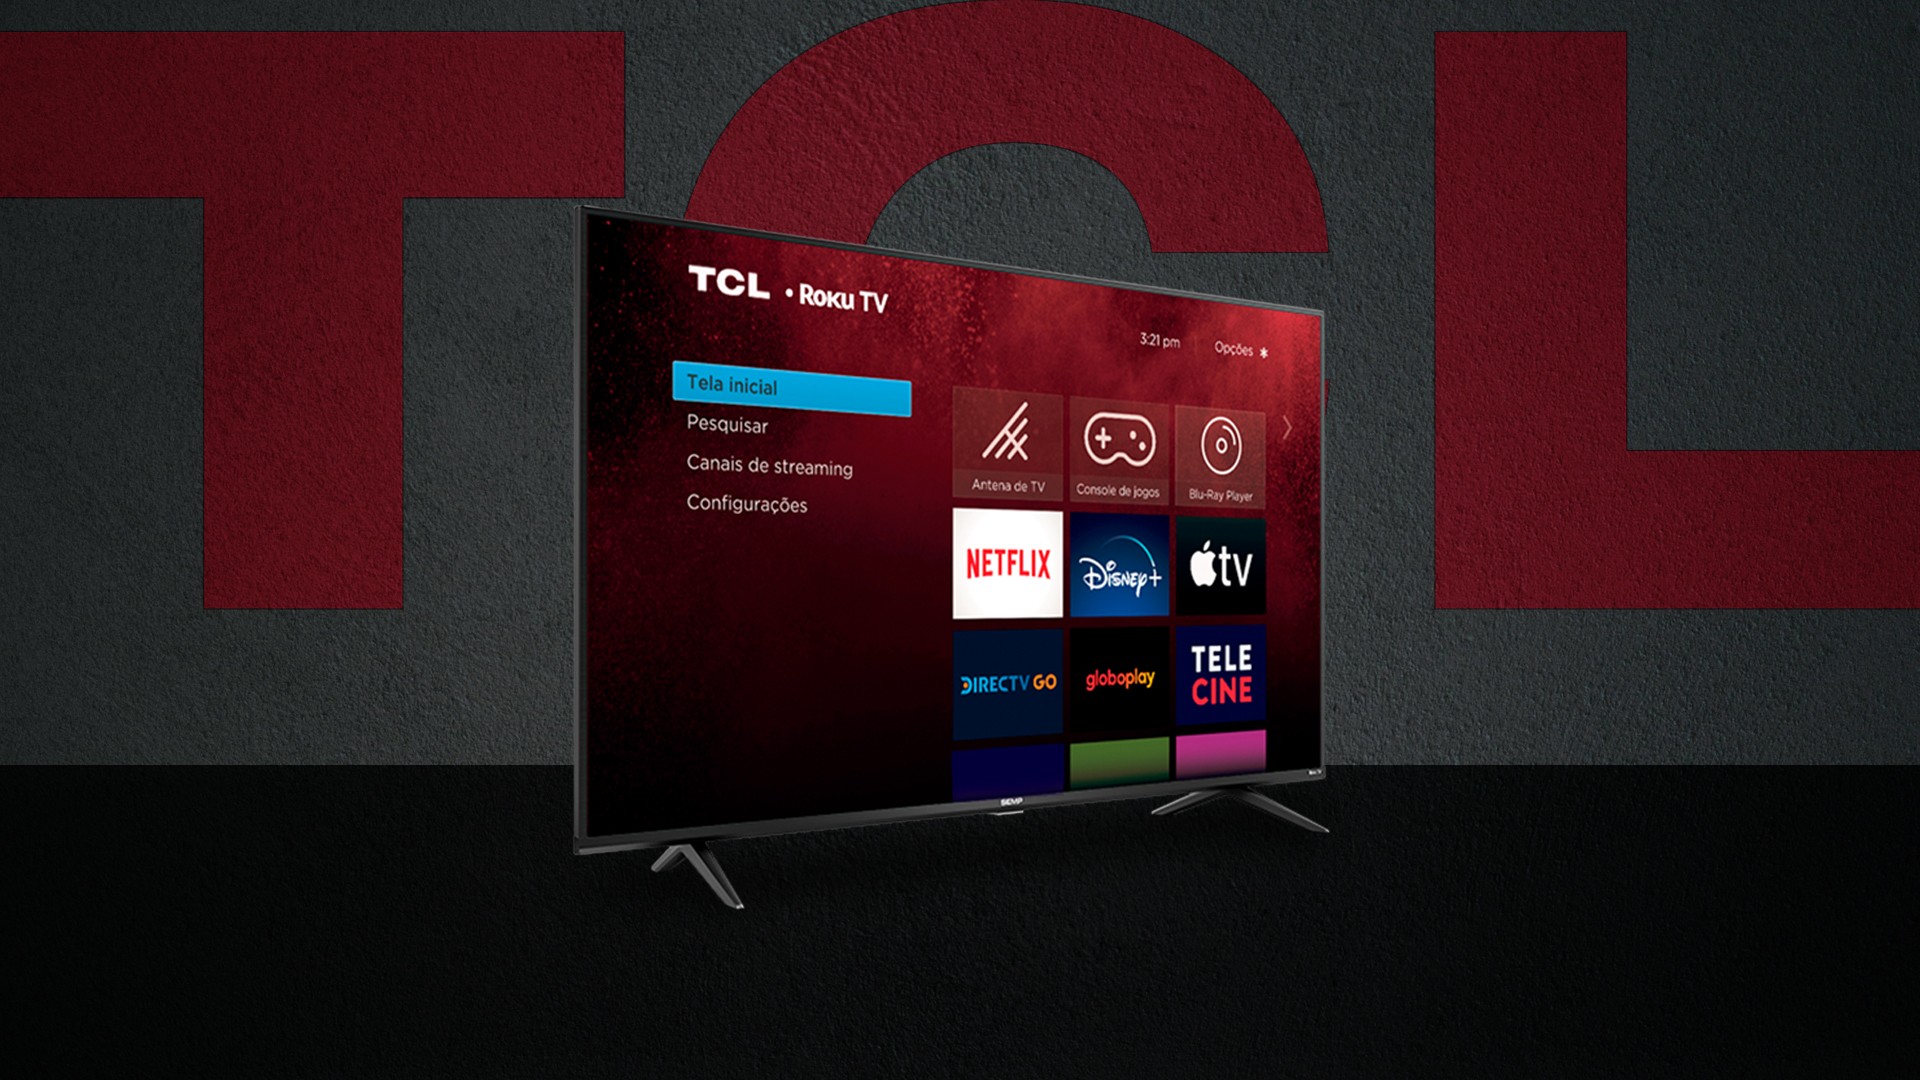 TCL anuncia novas Smart TVs com Roku TV a partir de R$ 1.939 13